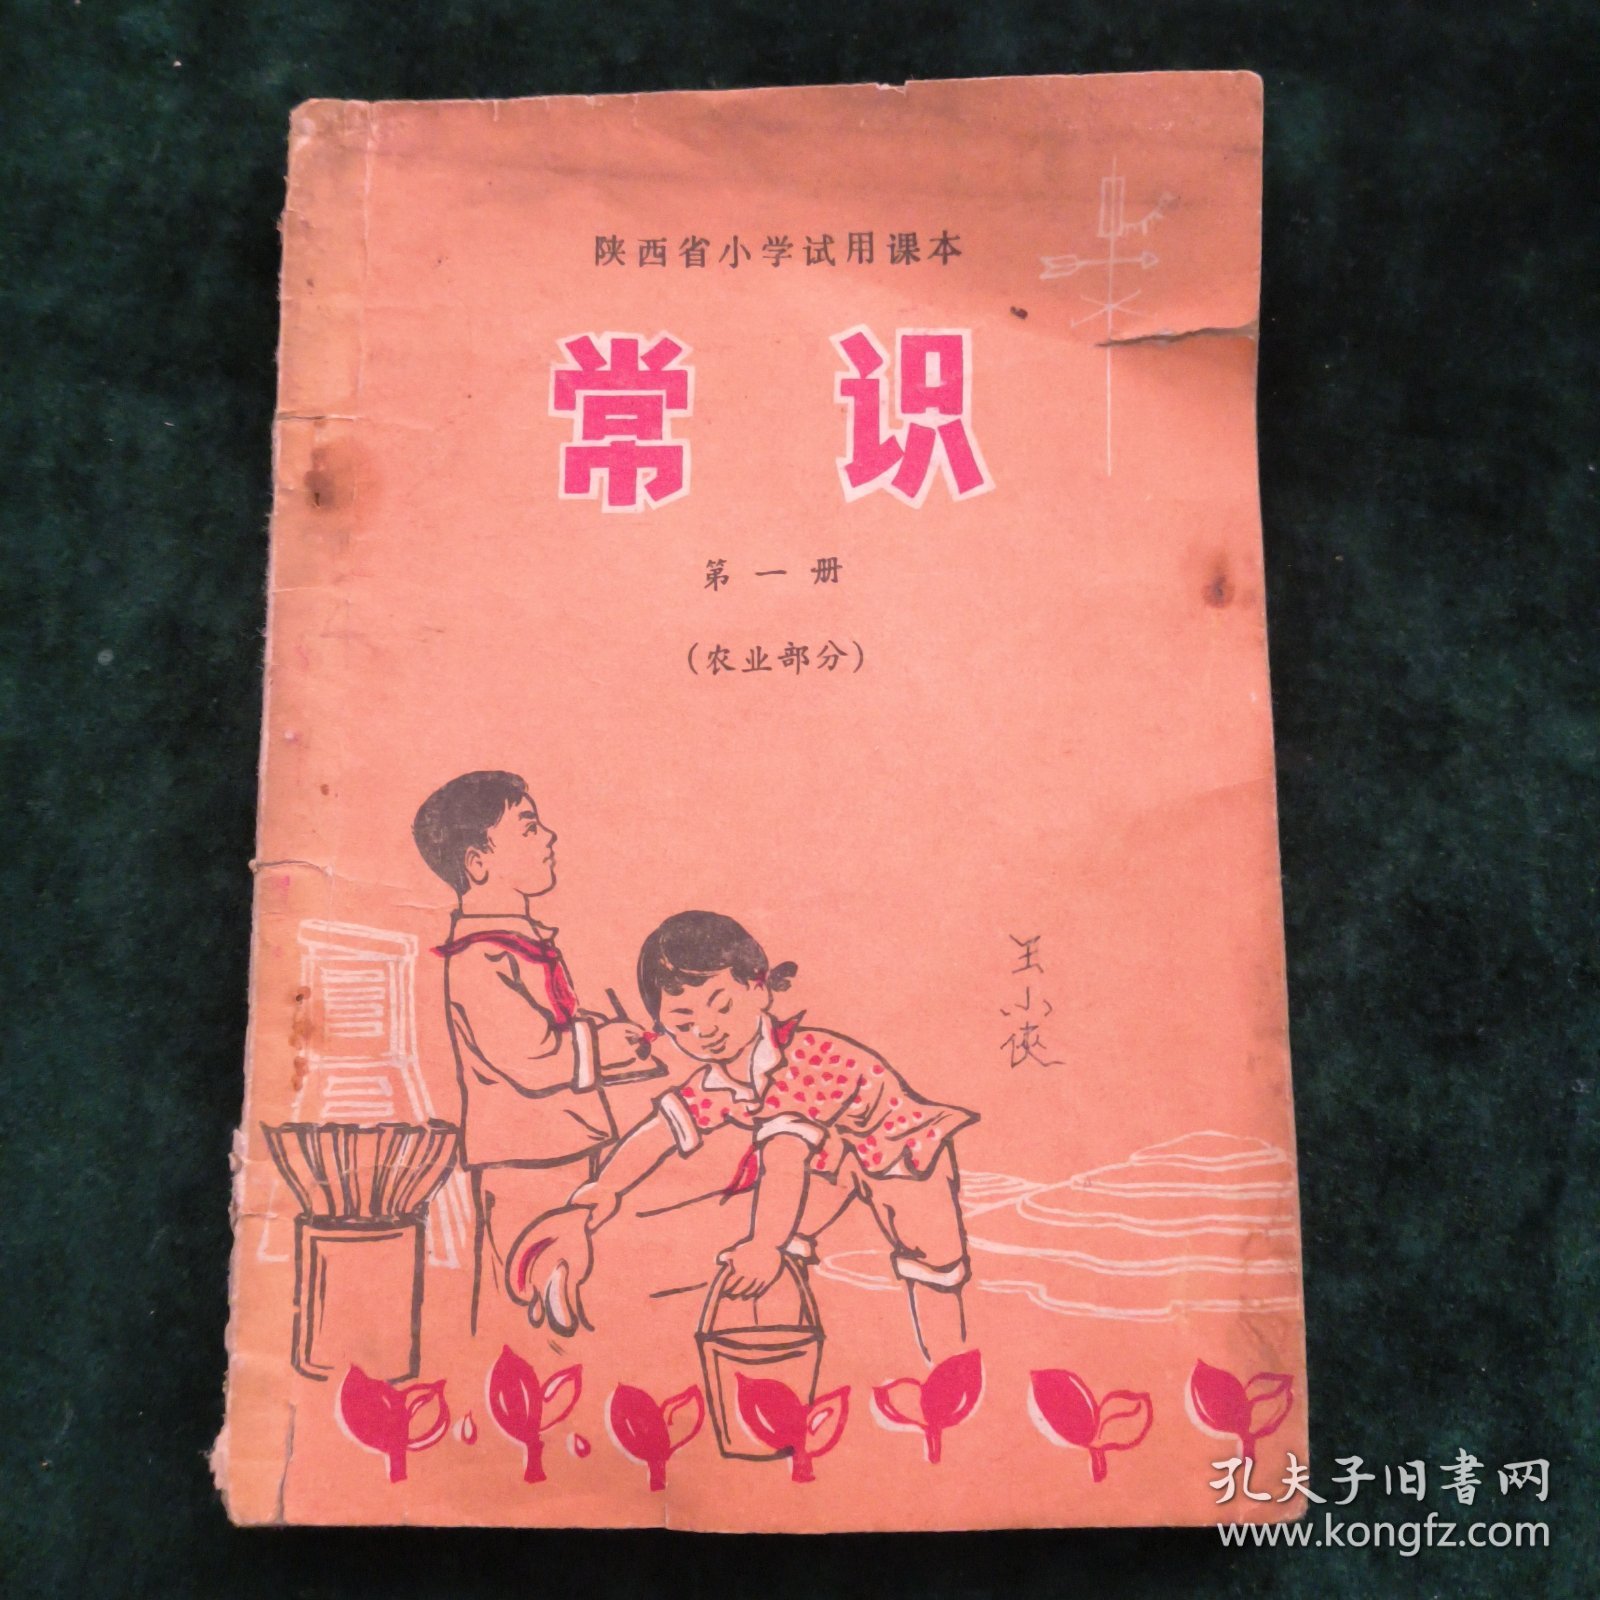 陕西省小学试用课本-常识（第一册）-农业部分